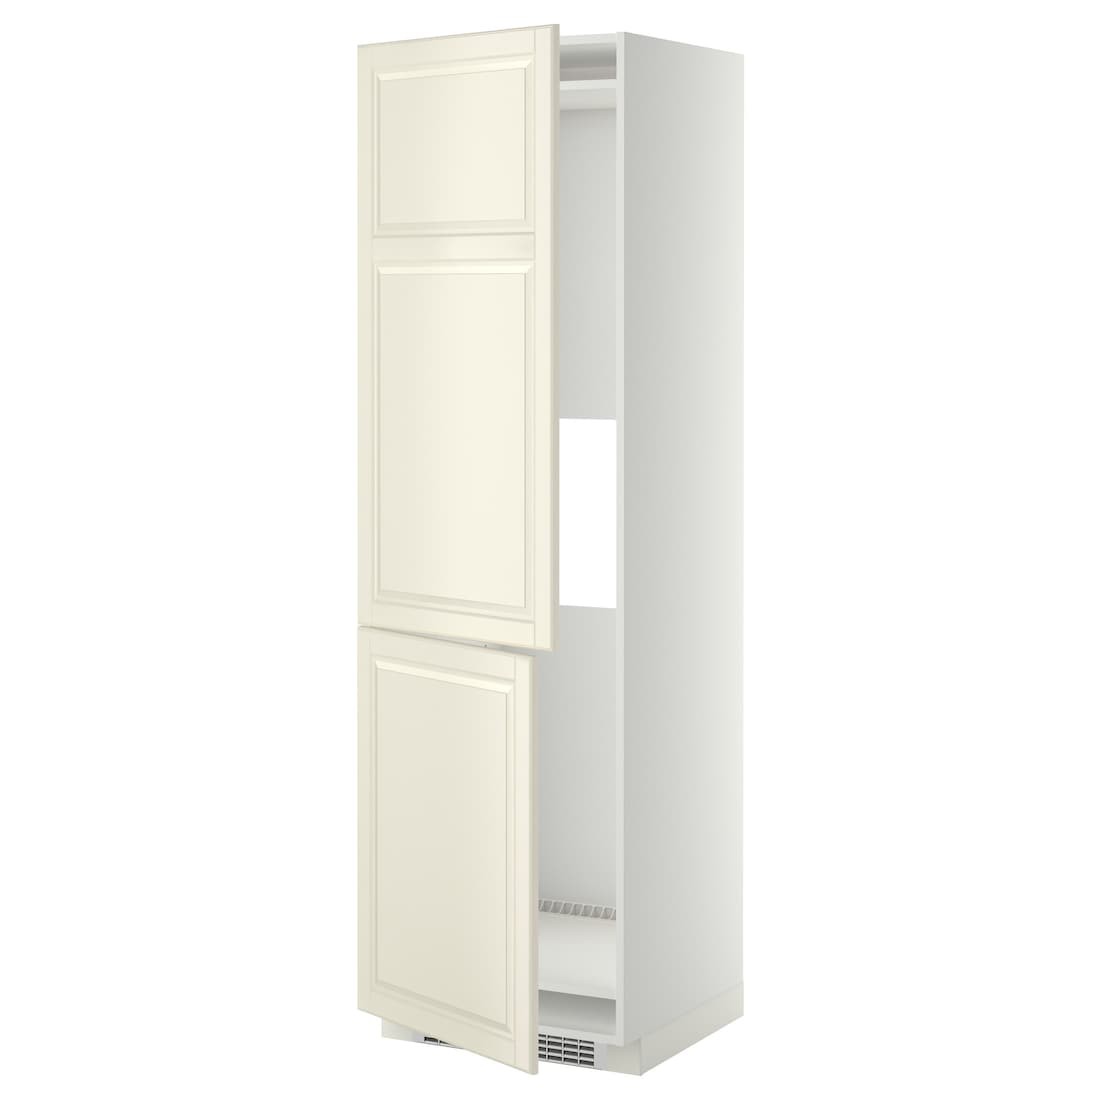 METOD МЕТОД Высокий шкаф для холодильника / морозильника, белый / Bodbyn кремовый, 60x60x200 см